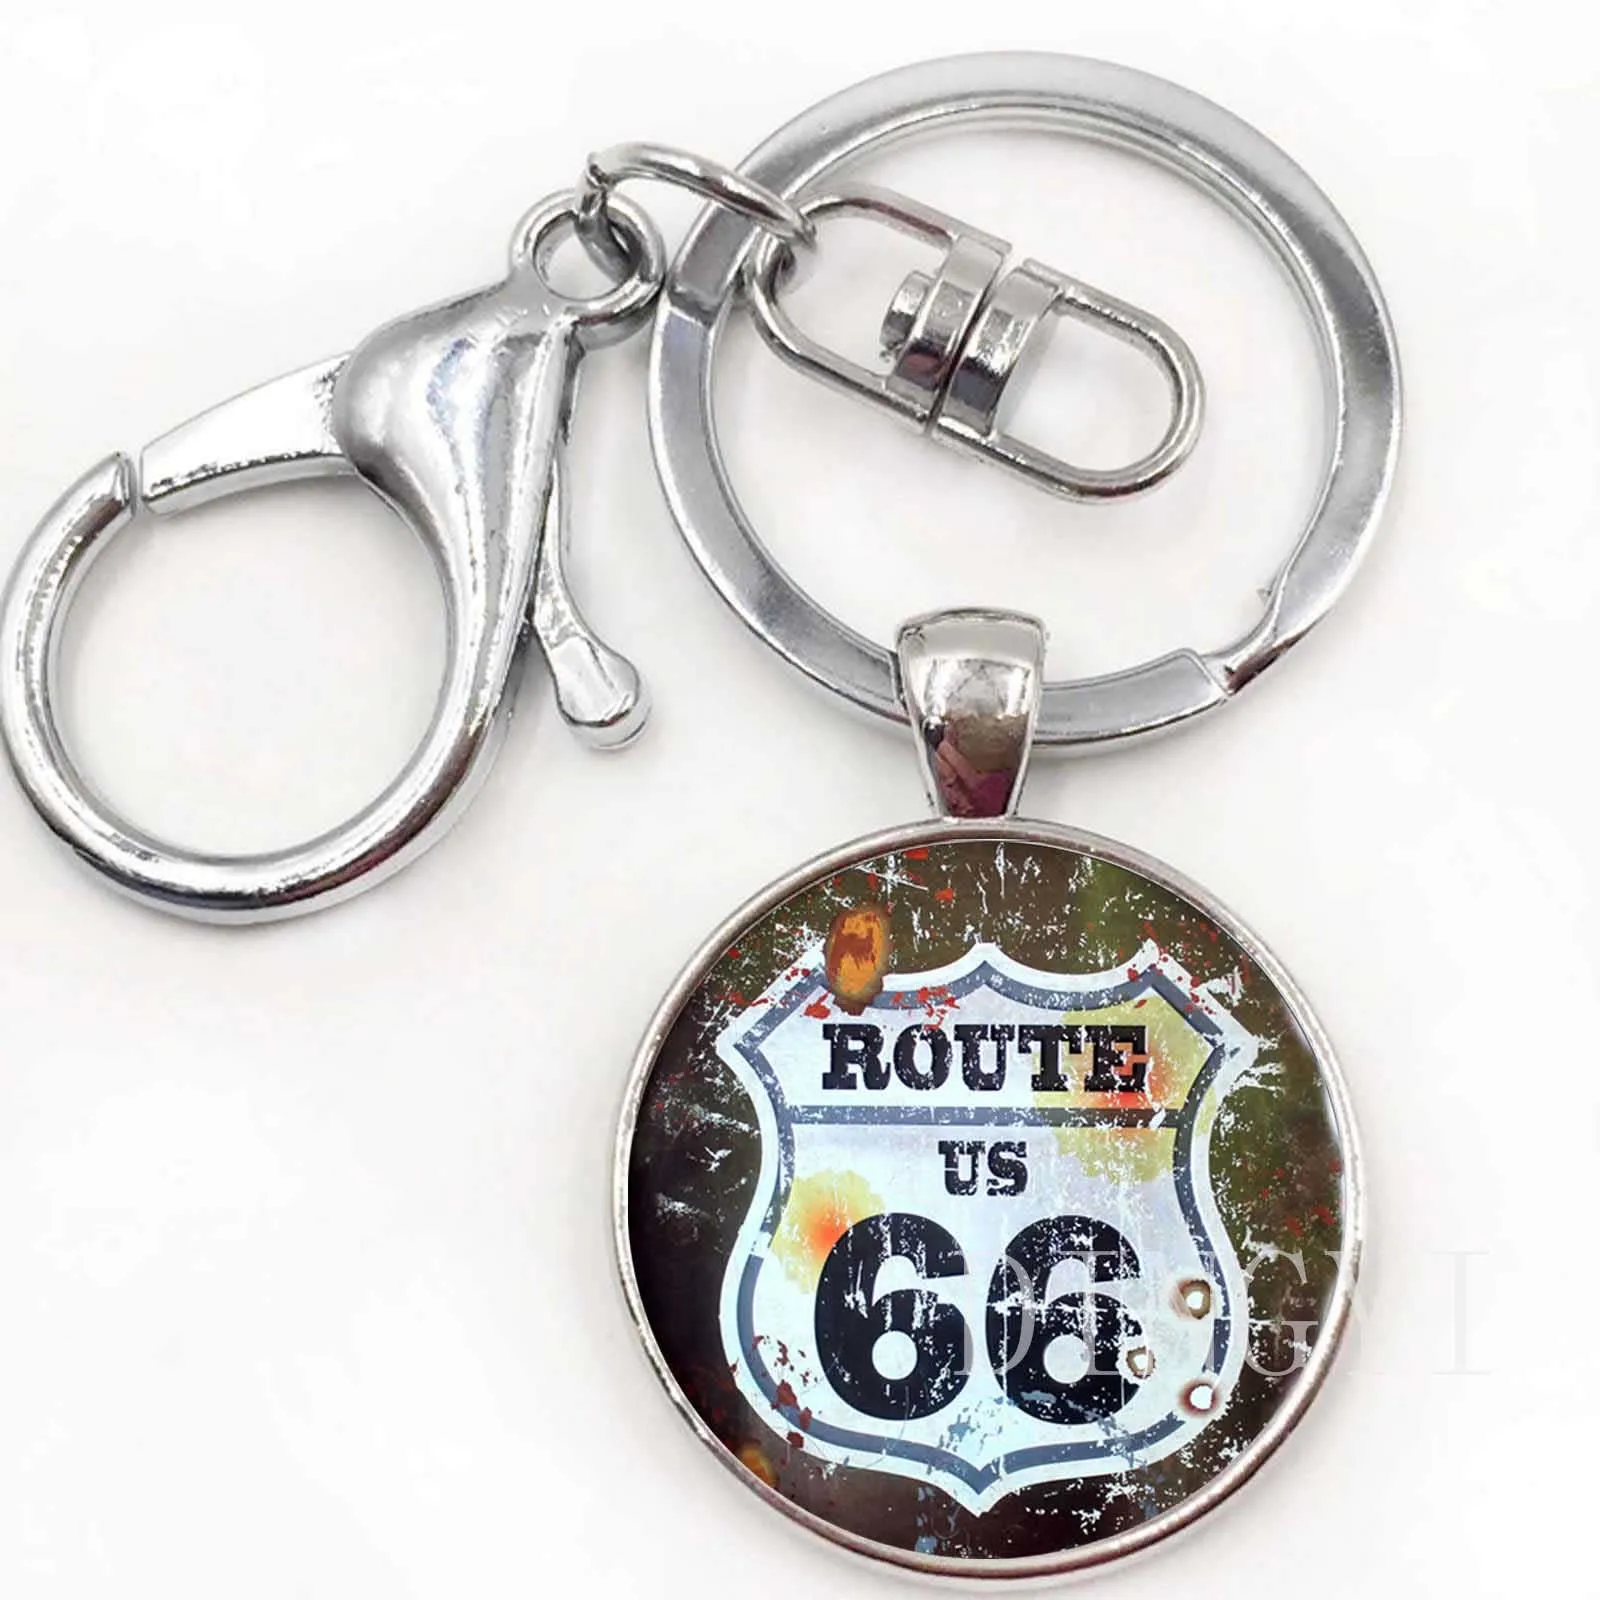 Route US 66 брелок стеклянные купольные украшения Серебро старинный Route 66 США кулон женские мужские брелки круглый ключ цепи в подарок - Цвет: 5